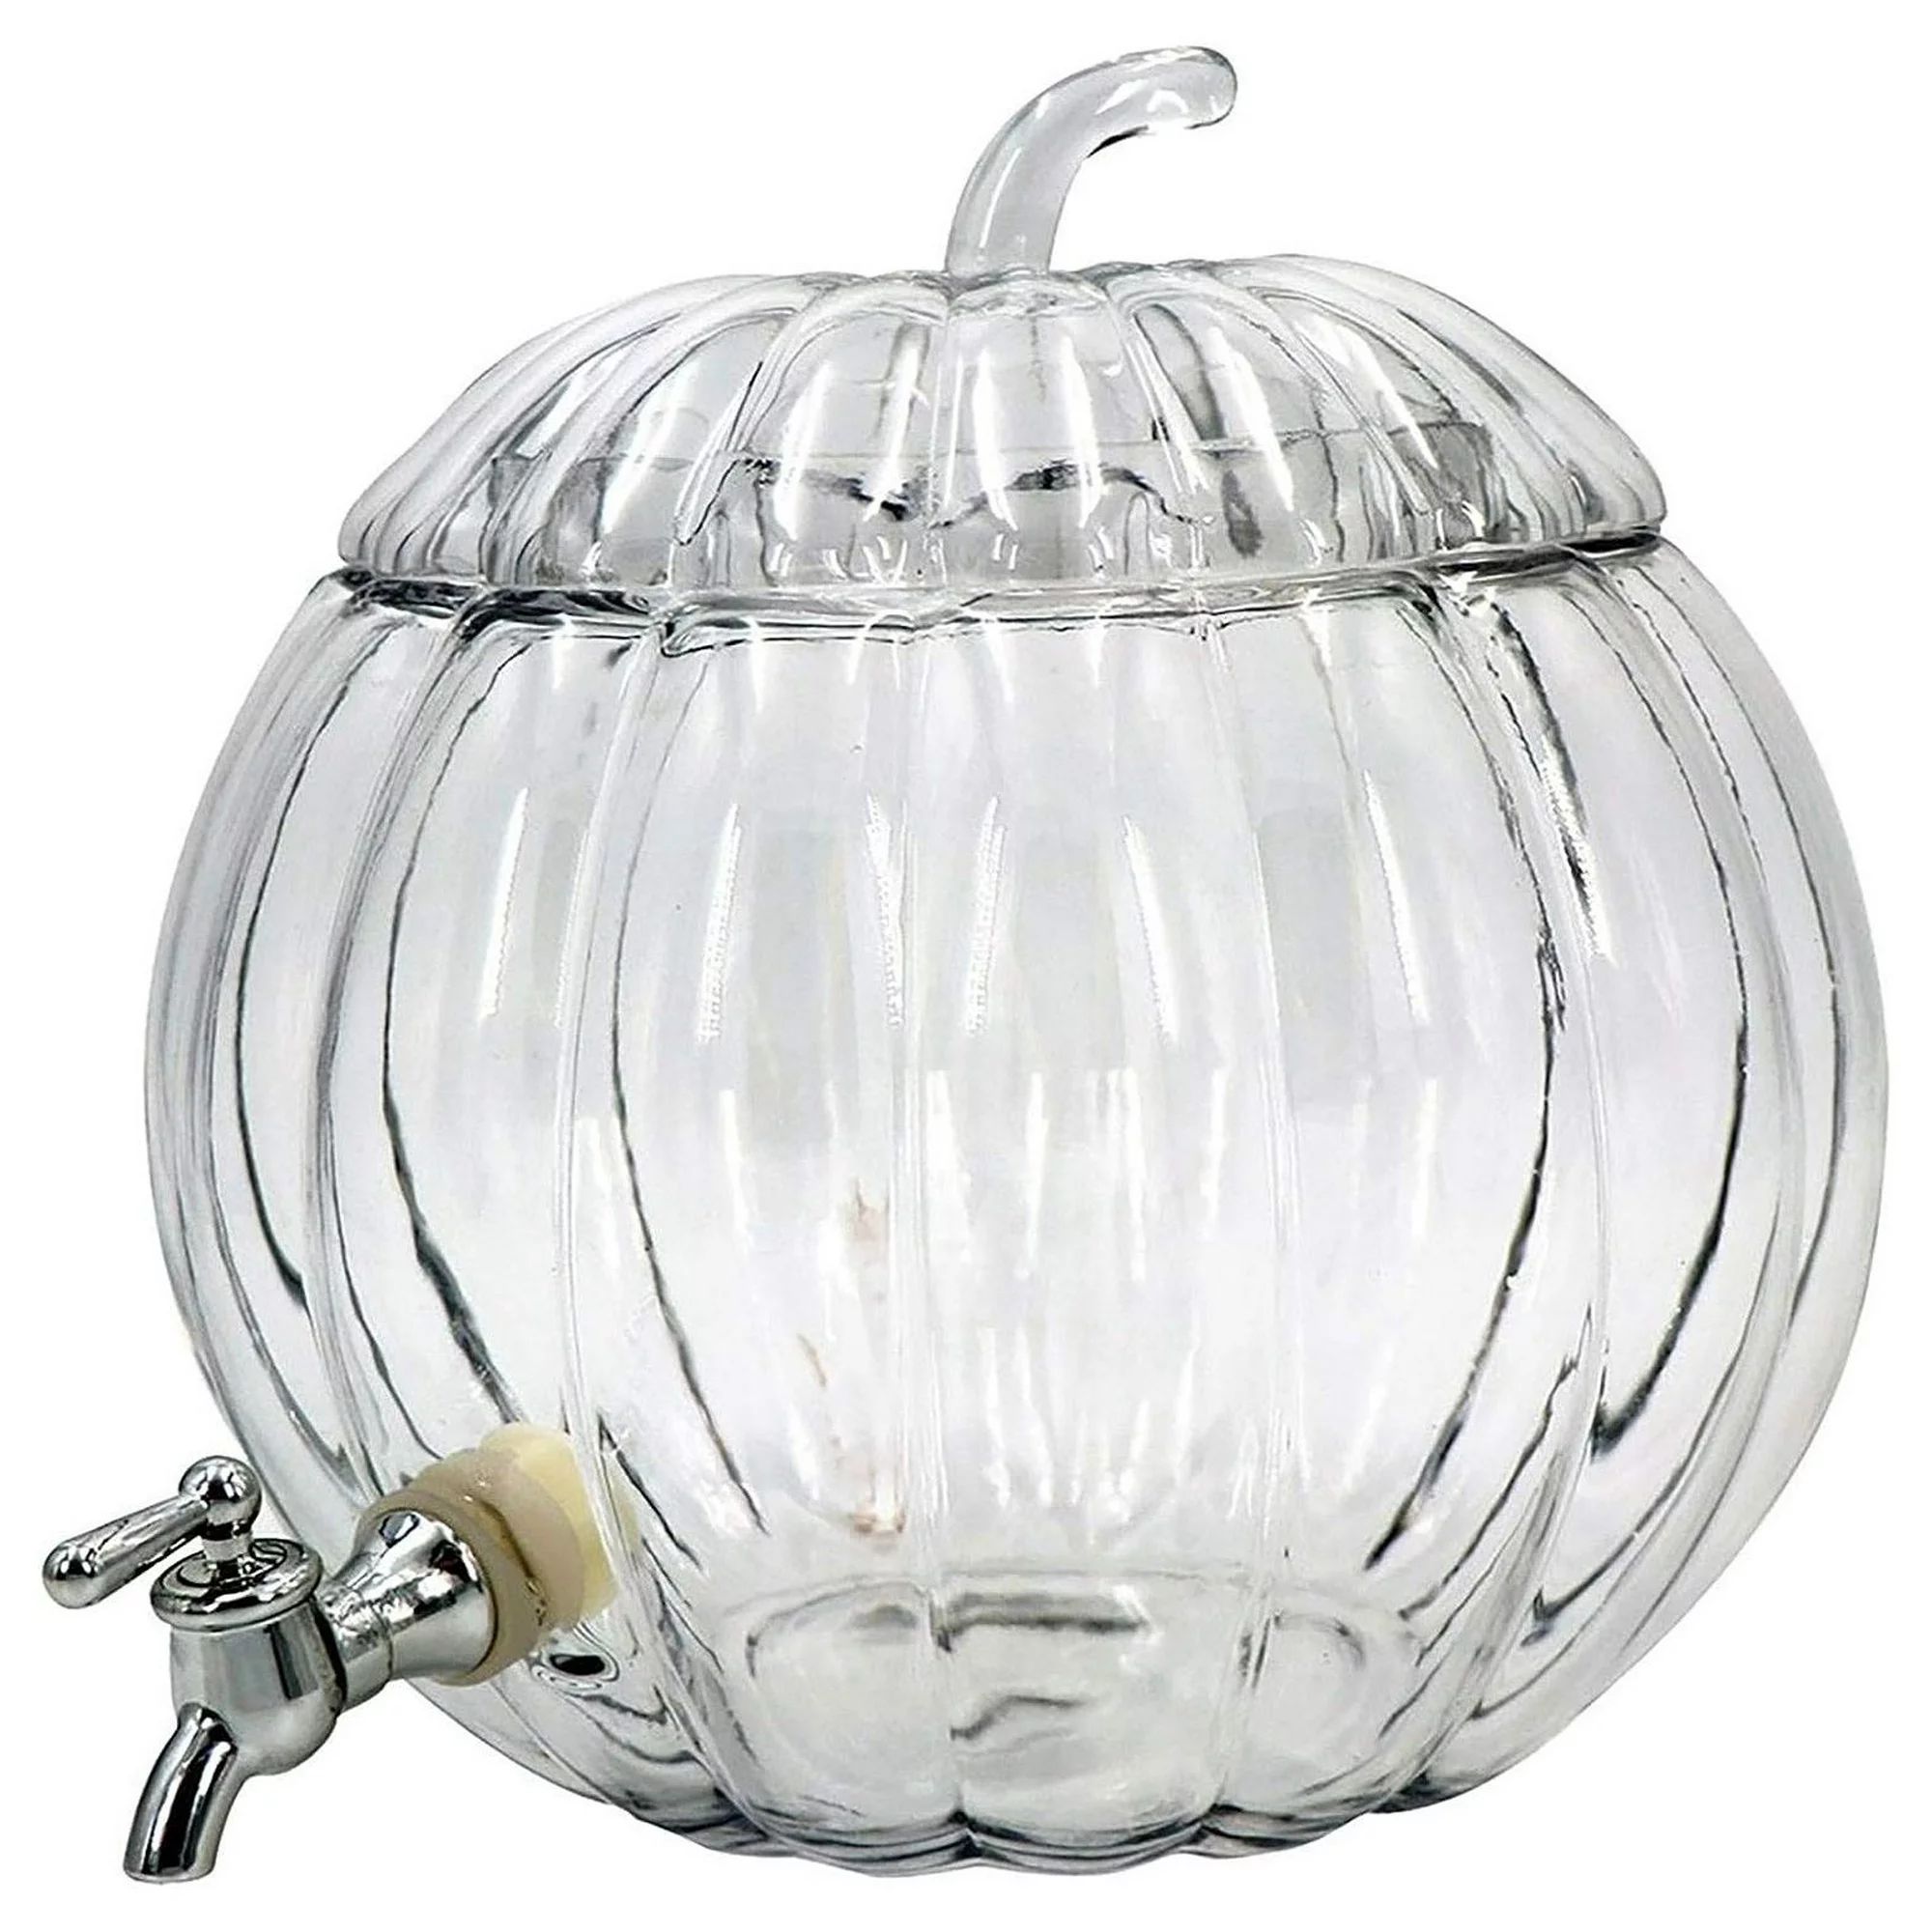 Pumpkin 2 Gallon Drink Dispenser Glass Standard | Walmart (US)